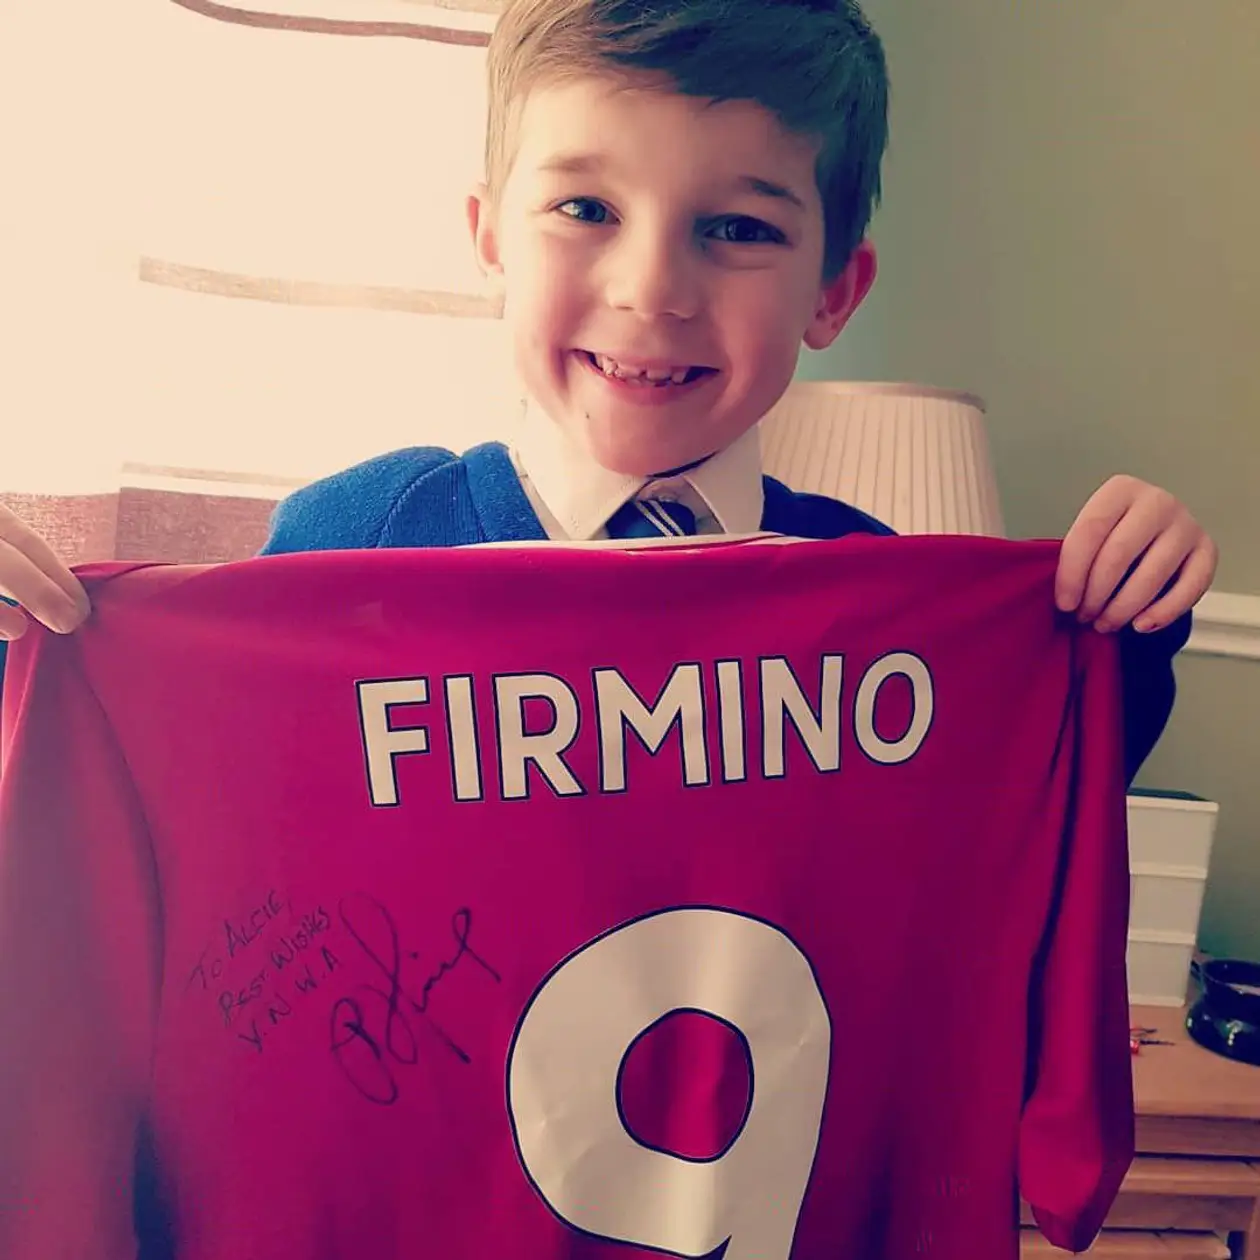 Мальчик помог голодающим, а игрок «Ливерпуля» прислал ему письмо и футболку Фирмино